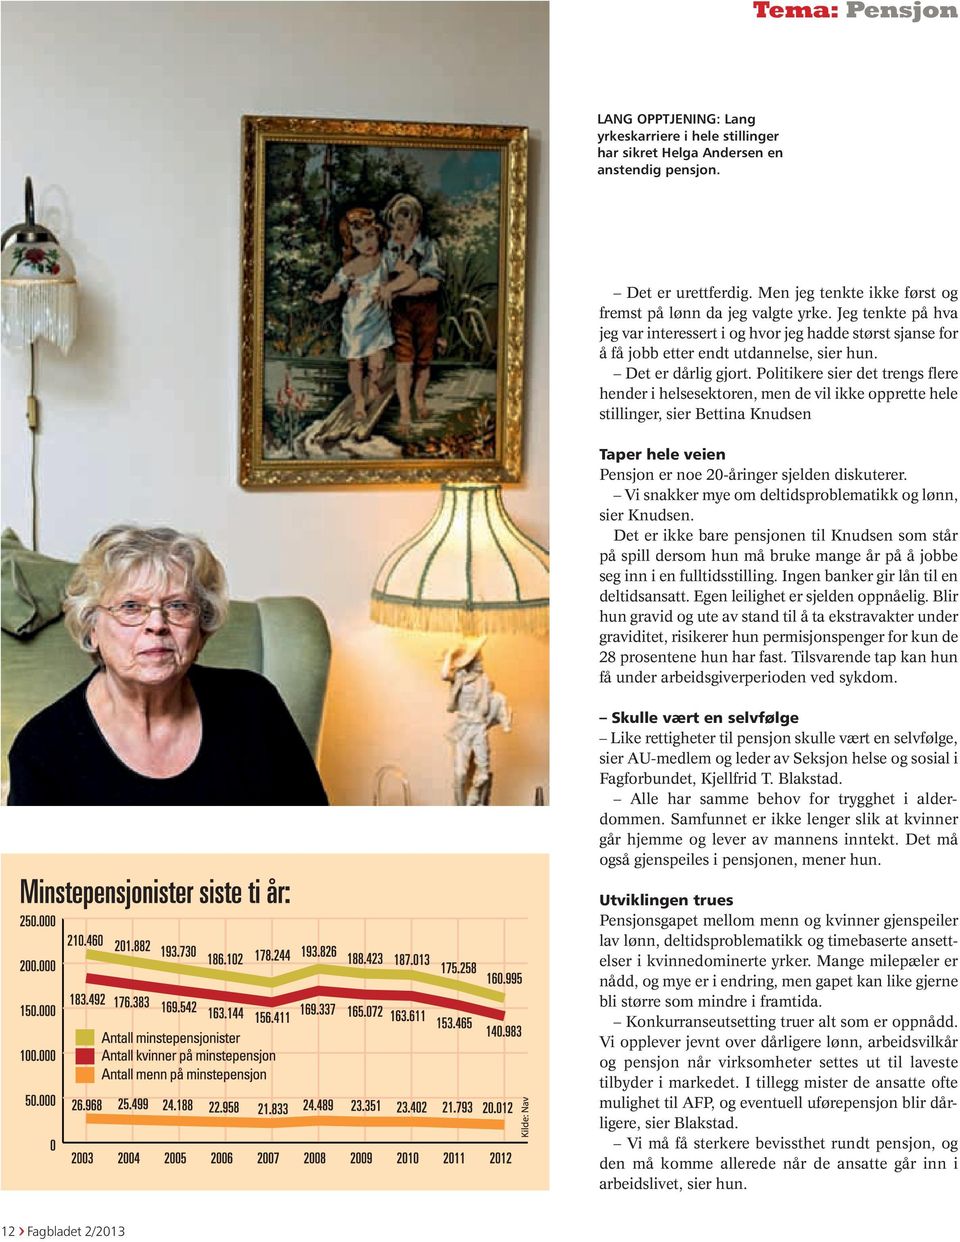 Politikere sier det trengs flere hender i helsesektoren, men de vil ikke opprette hele stillinger, sier Bettina Knudsen Taper hele veien Pensjon er noe 20-åringer sjelden diskuterer.